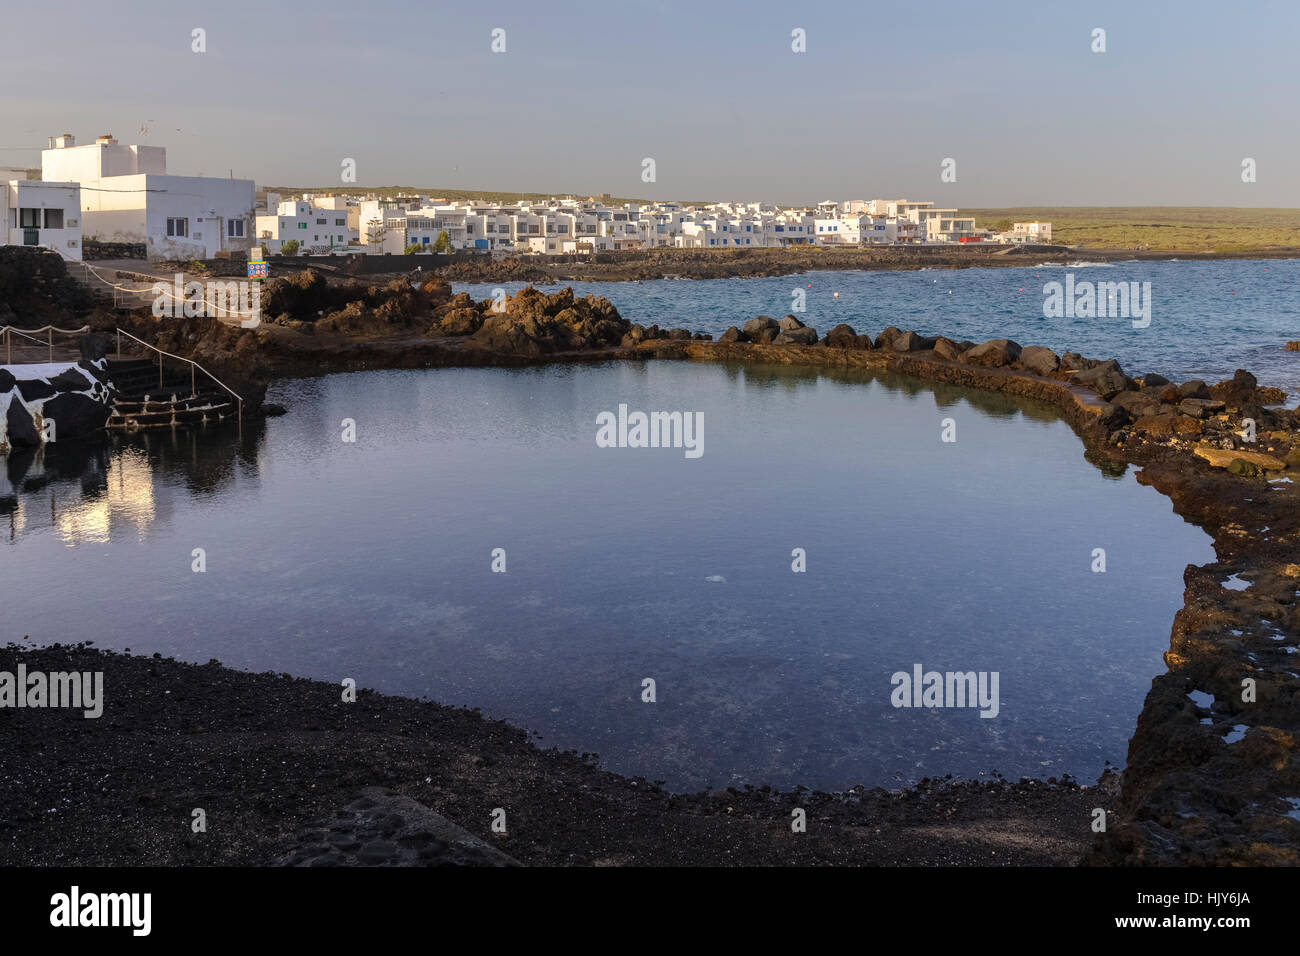 Piscine con acqua di mare, Punta Mujeres, Haria, Lanzarote, Isole Canarie, Spagna Foto Stock